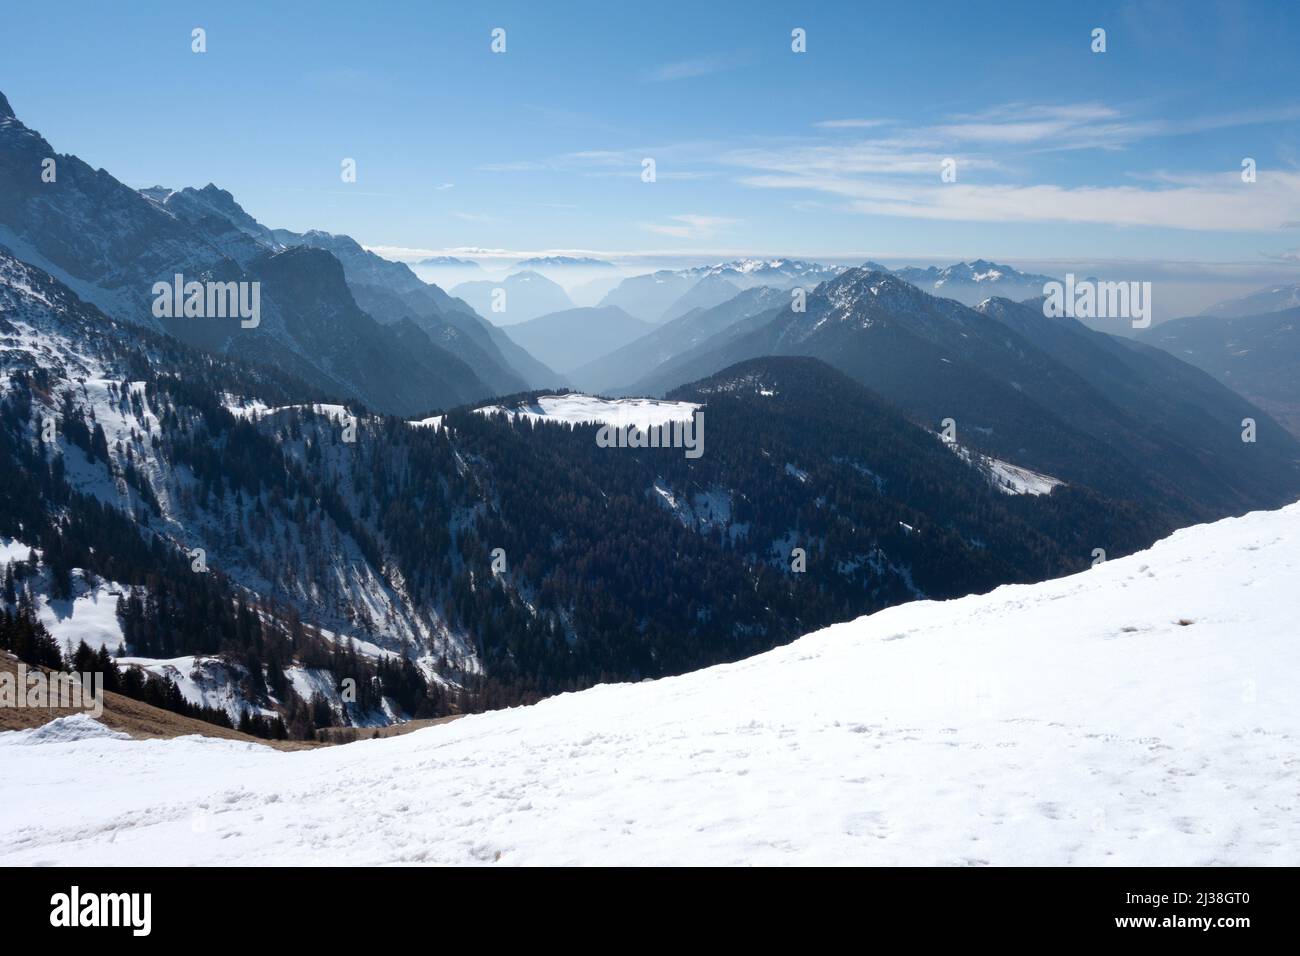 Dolomiti Italia paesaggio montano; una vista sulle Dolomiti innevate del Nord Italia a fine inverno - paesaggio montano e nevoso Italia. Foto Stock